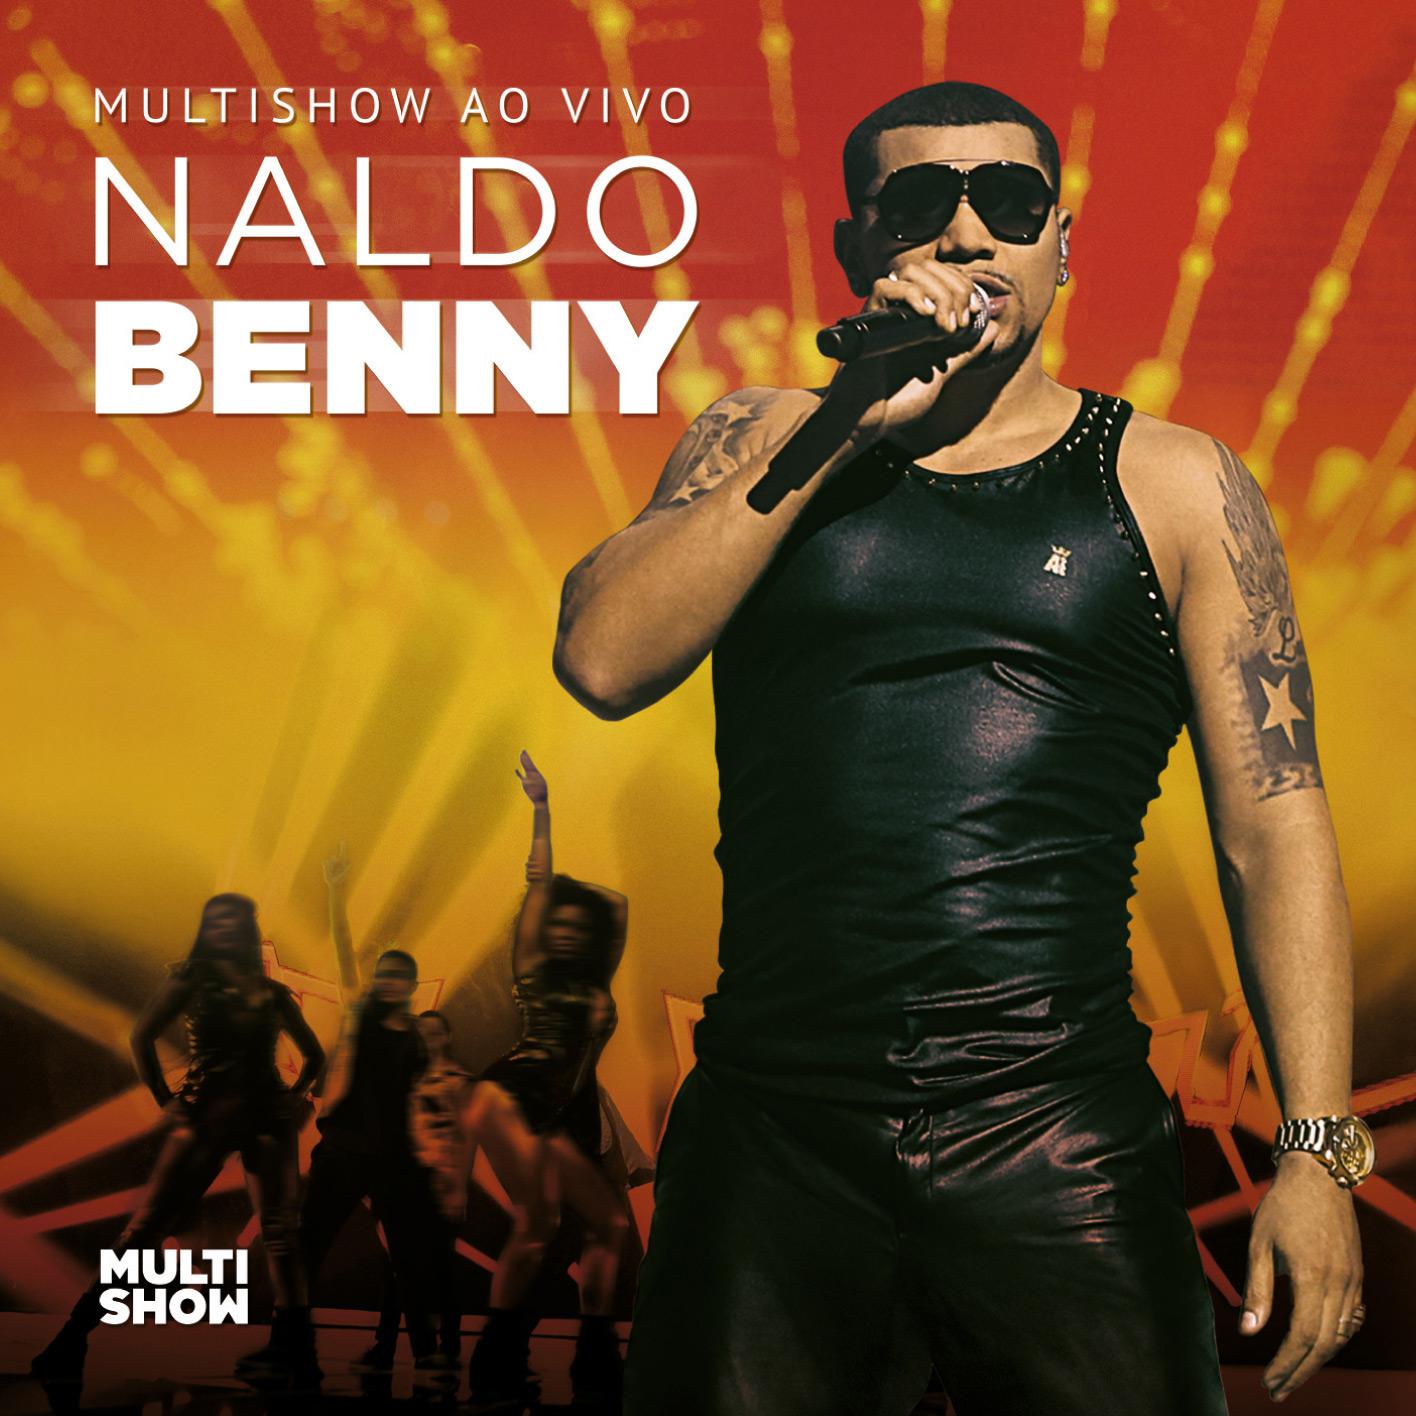 CD Naldo Benny - Multishow Ao Vivo - Vol. 1 é bom? Vale a pena?